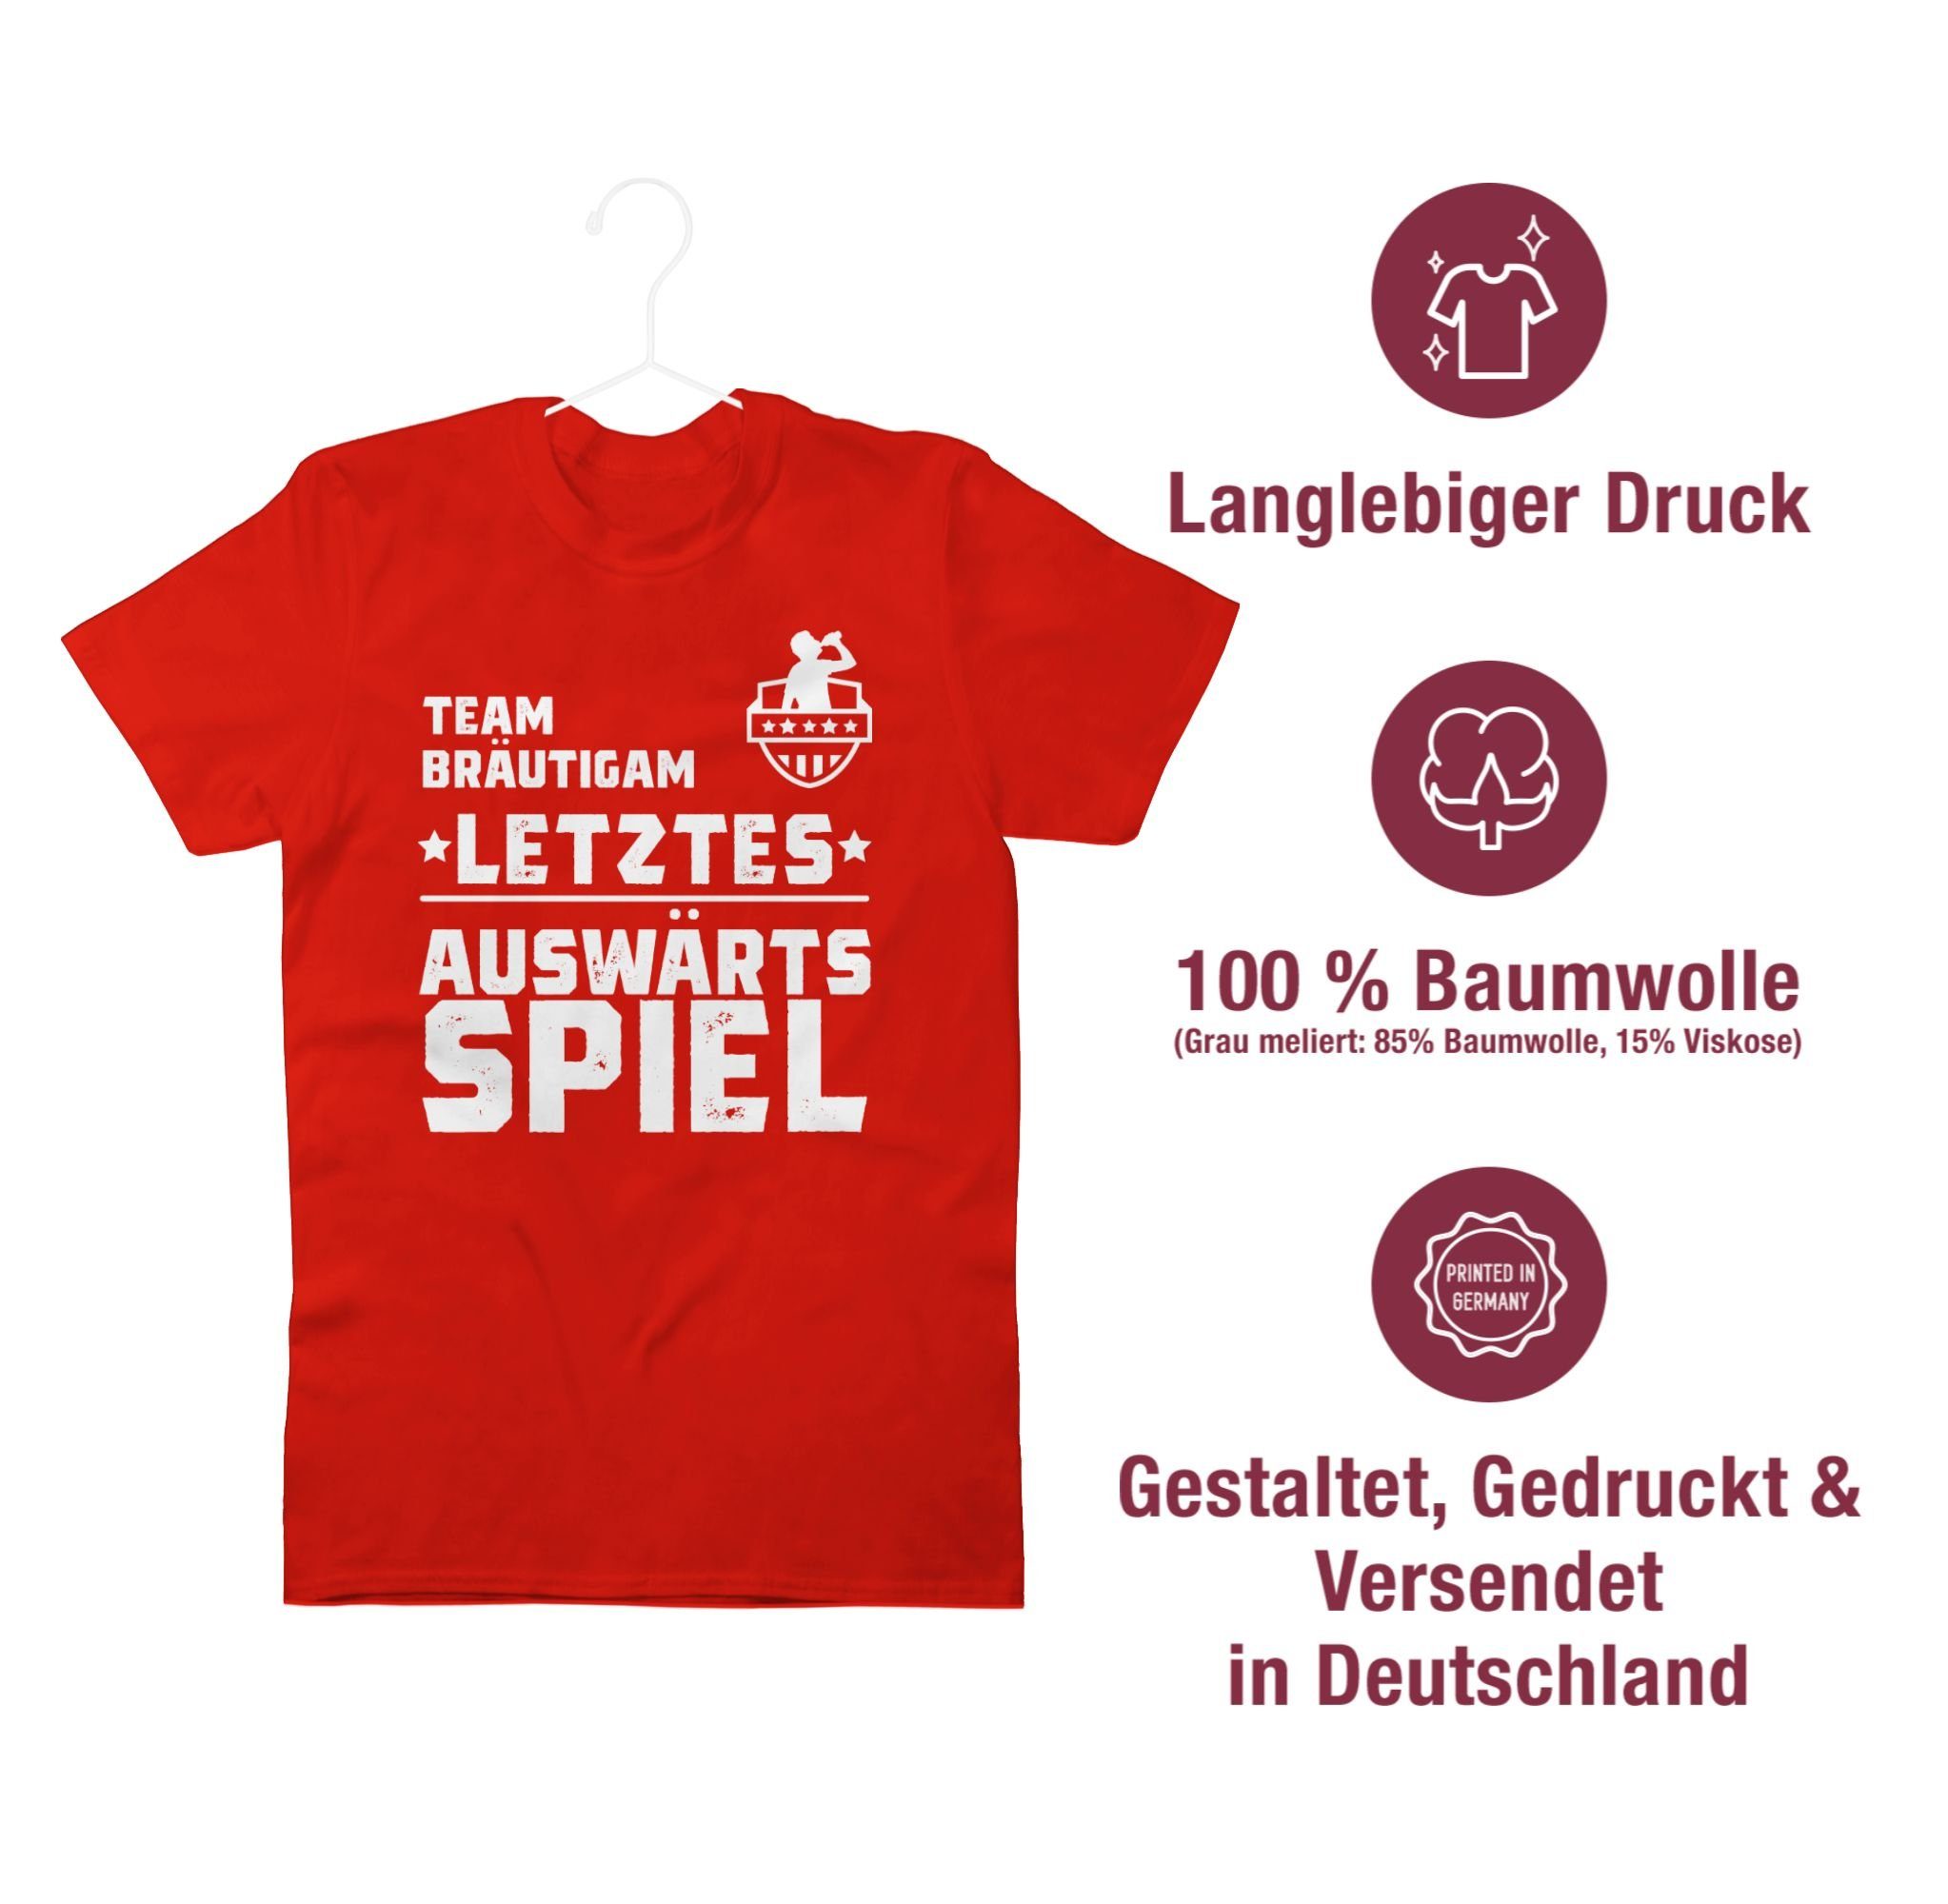 JGA Bräutigam Team 03 Auswärtsspiel Männer T-Shirt Letztes Auswärtstour Rot - Shirtracer